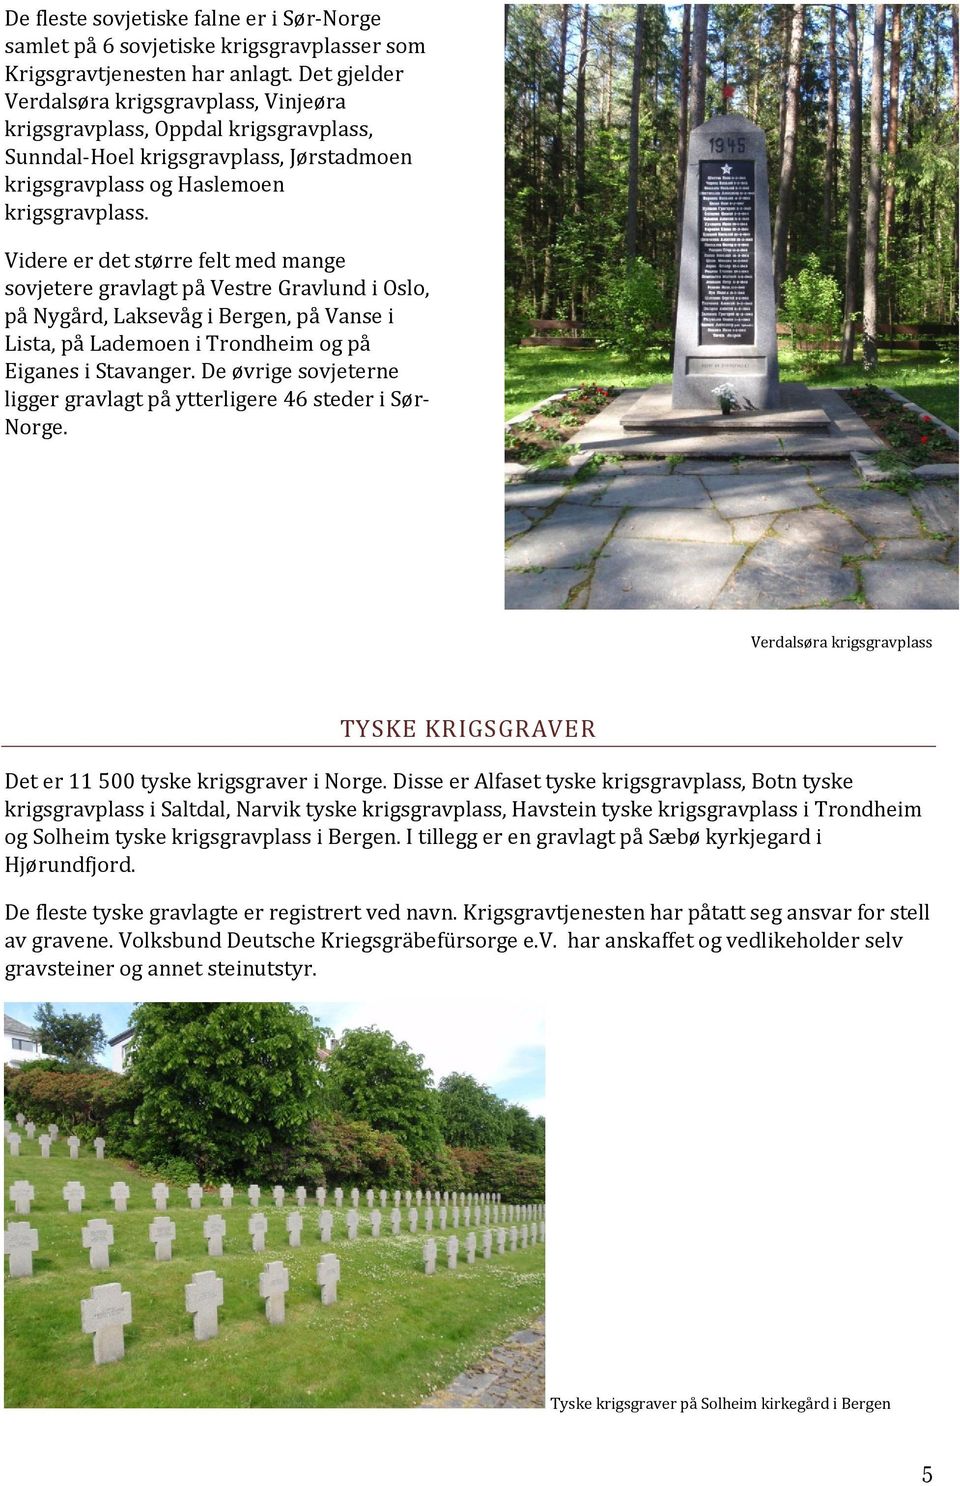 Videre er det større felt med mange sovjetere gravlagt på Vestre Gravlund i Oslo, på Nygård, Laksevåg i Bergen, på Vanse i Lista, på Lademoen i Trondheim og på Eiganes i Stavanger.